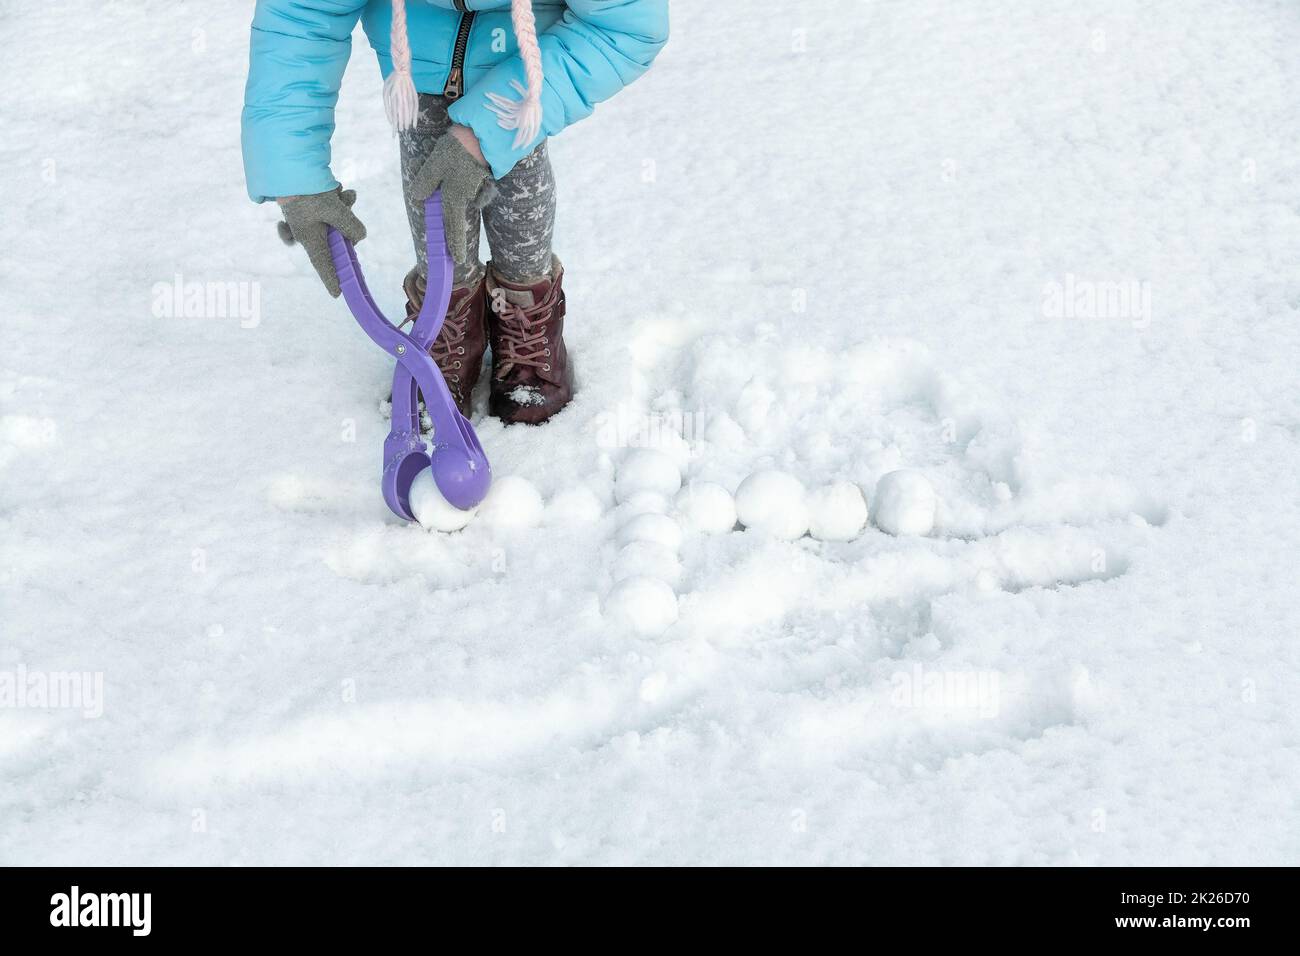 Das Kind hat Spaß beim Basteln von Schneebällen mit dem Spielzeugkunststoffautomaten. Kinder, die Schneebälle zwischen den Schneeverwehungen spielen. Platz für Text. Stockfoto